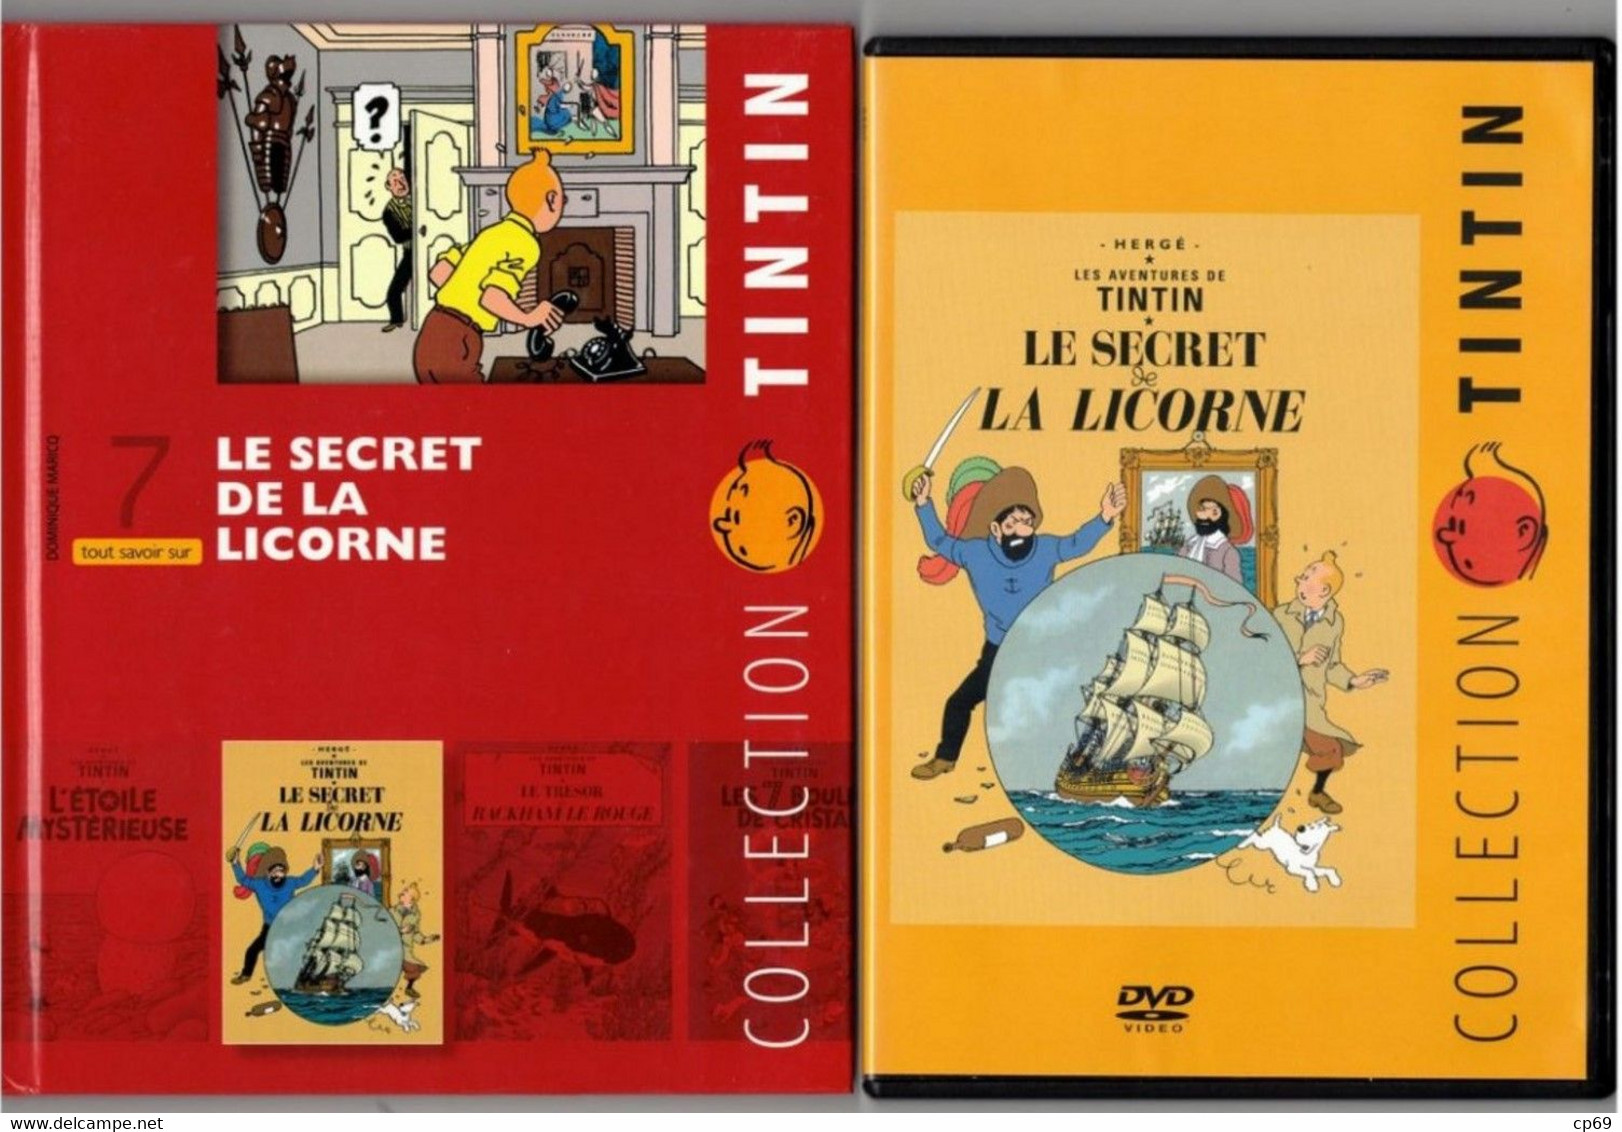 Tintin Hergé /Moulinsart 2010 Milou Chien Dog Cane Le Secret De La Licorne Capitaine Haddock N°7 DVD + Livret Explicatif - Dibujos Animados